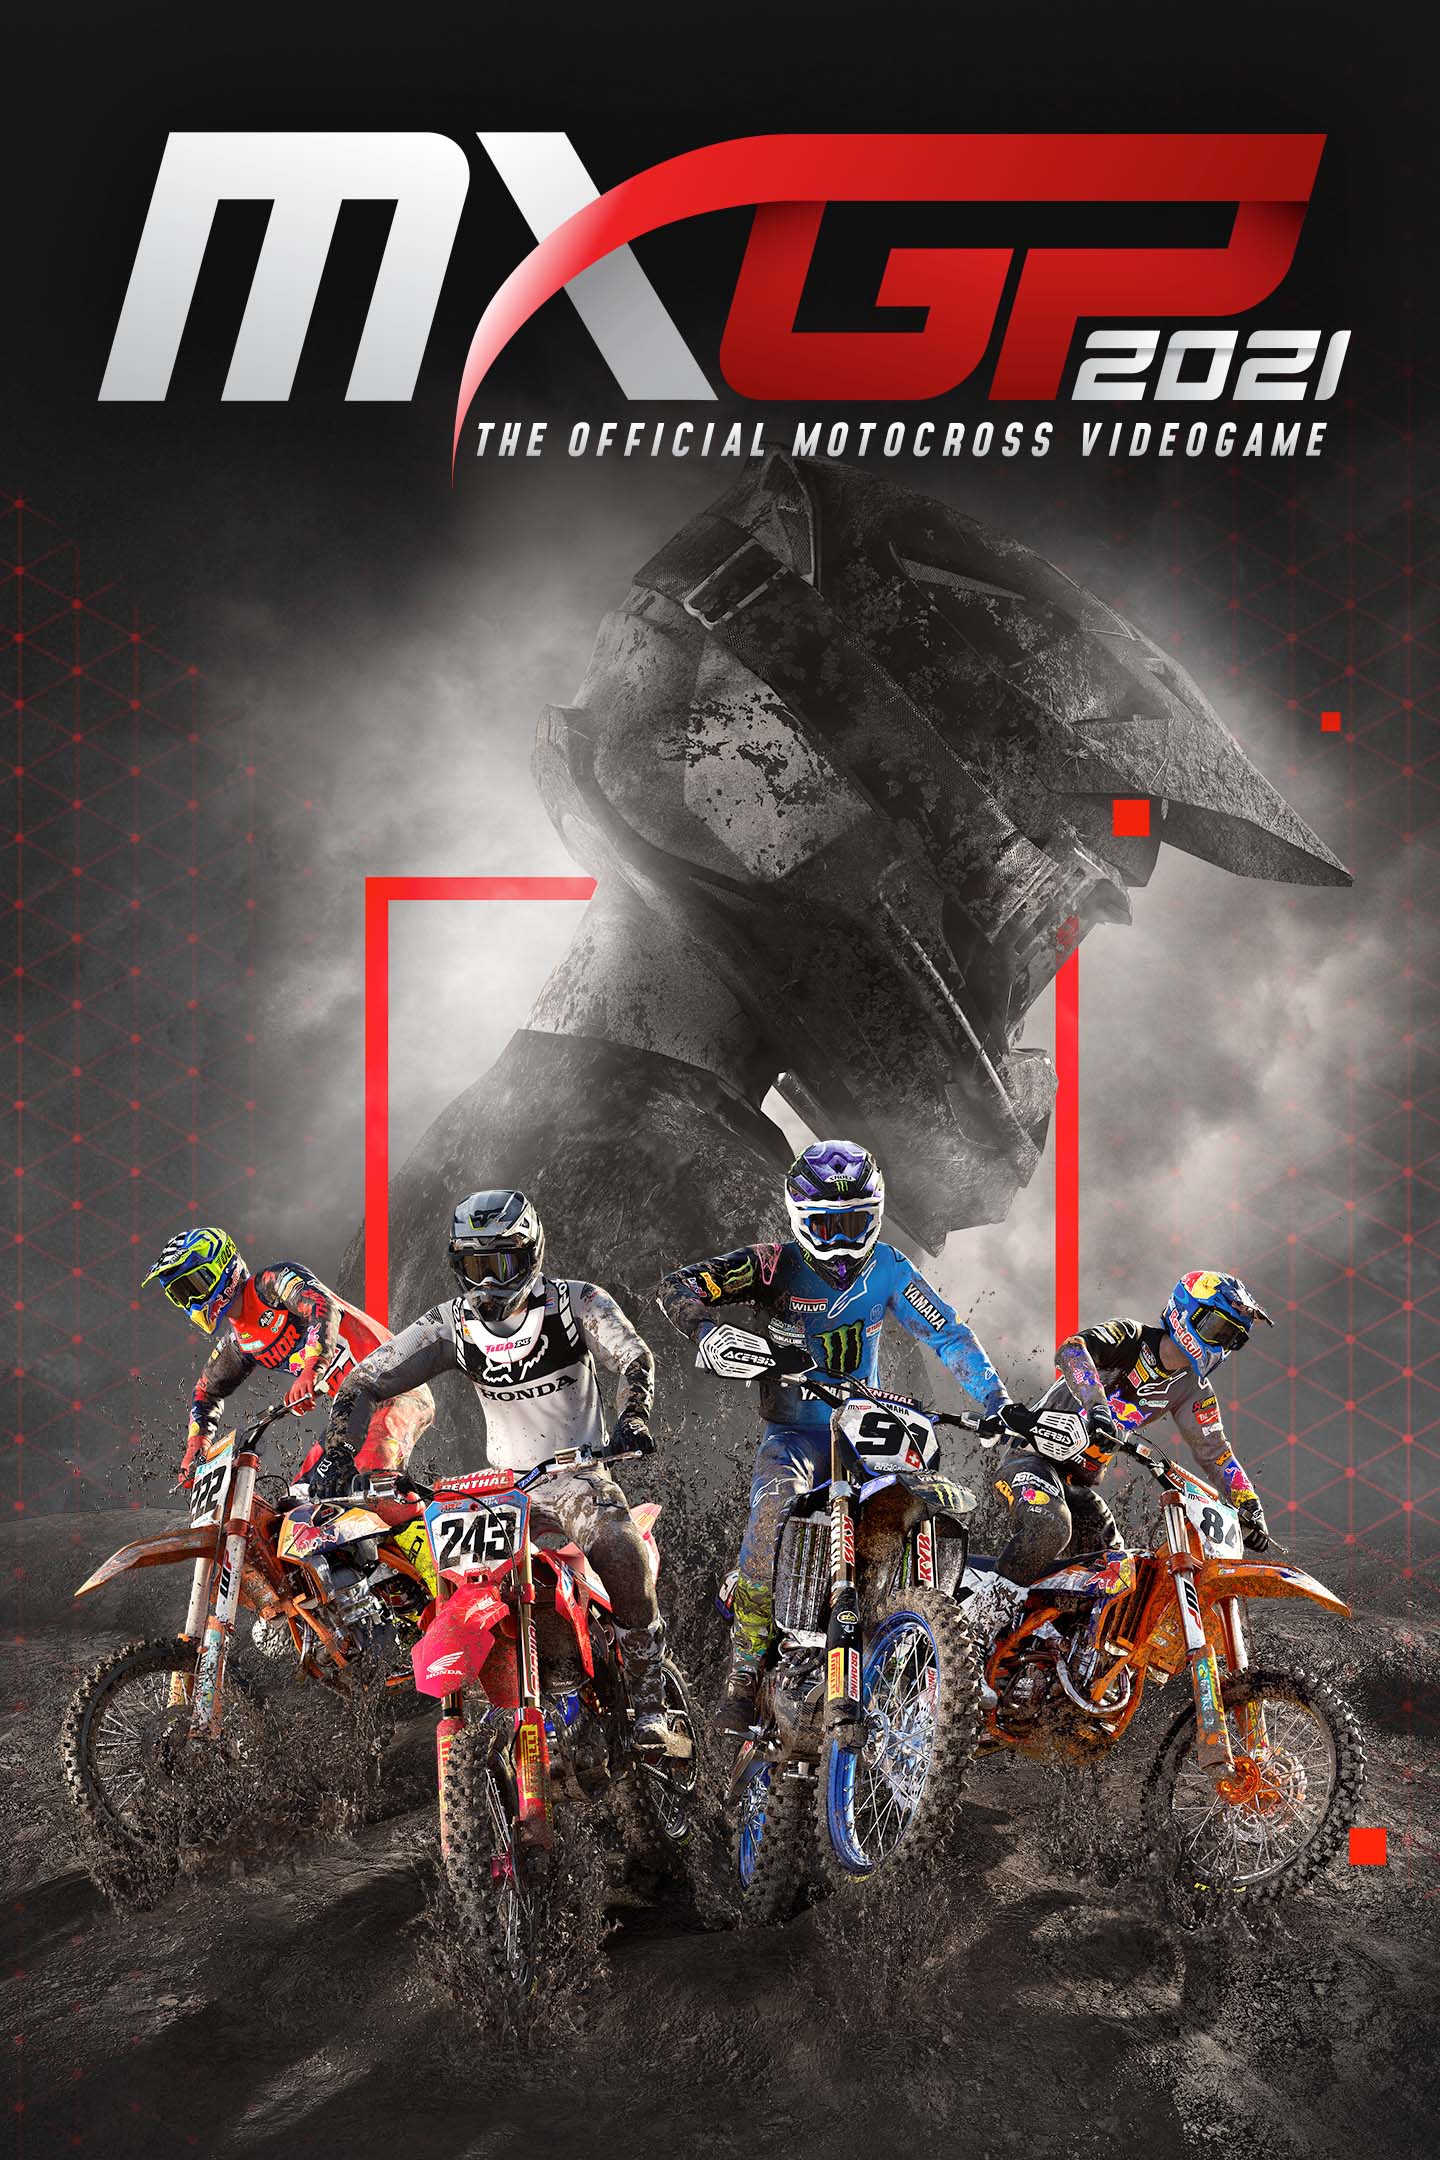 MX Bikes - Dirt Bike Games para iPhone - Download